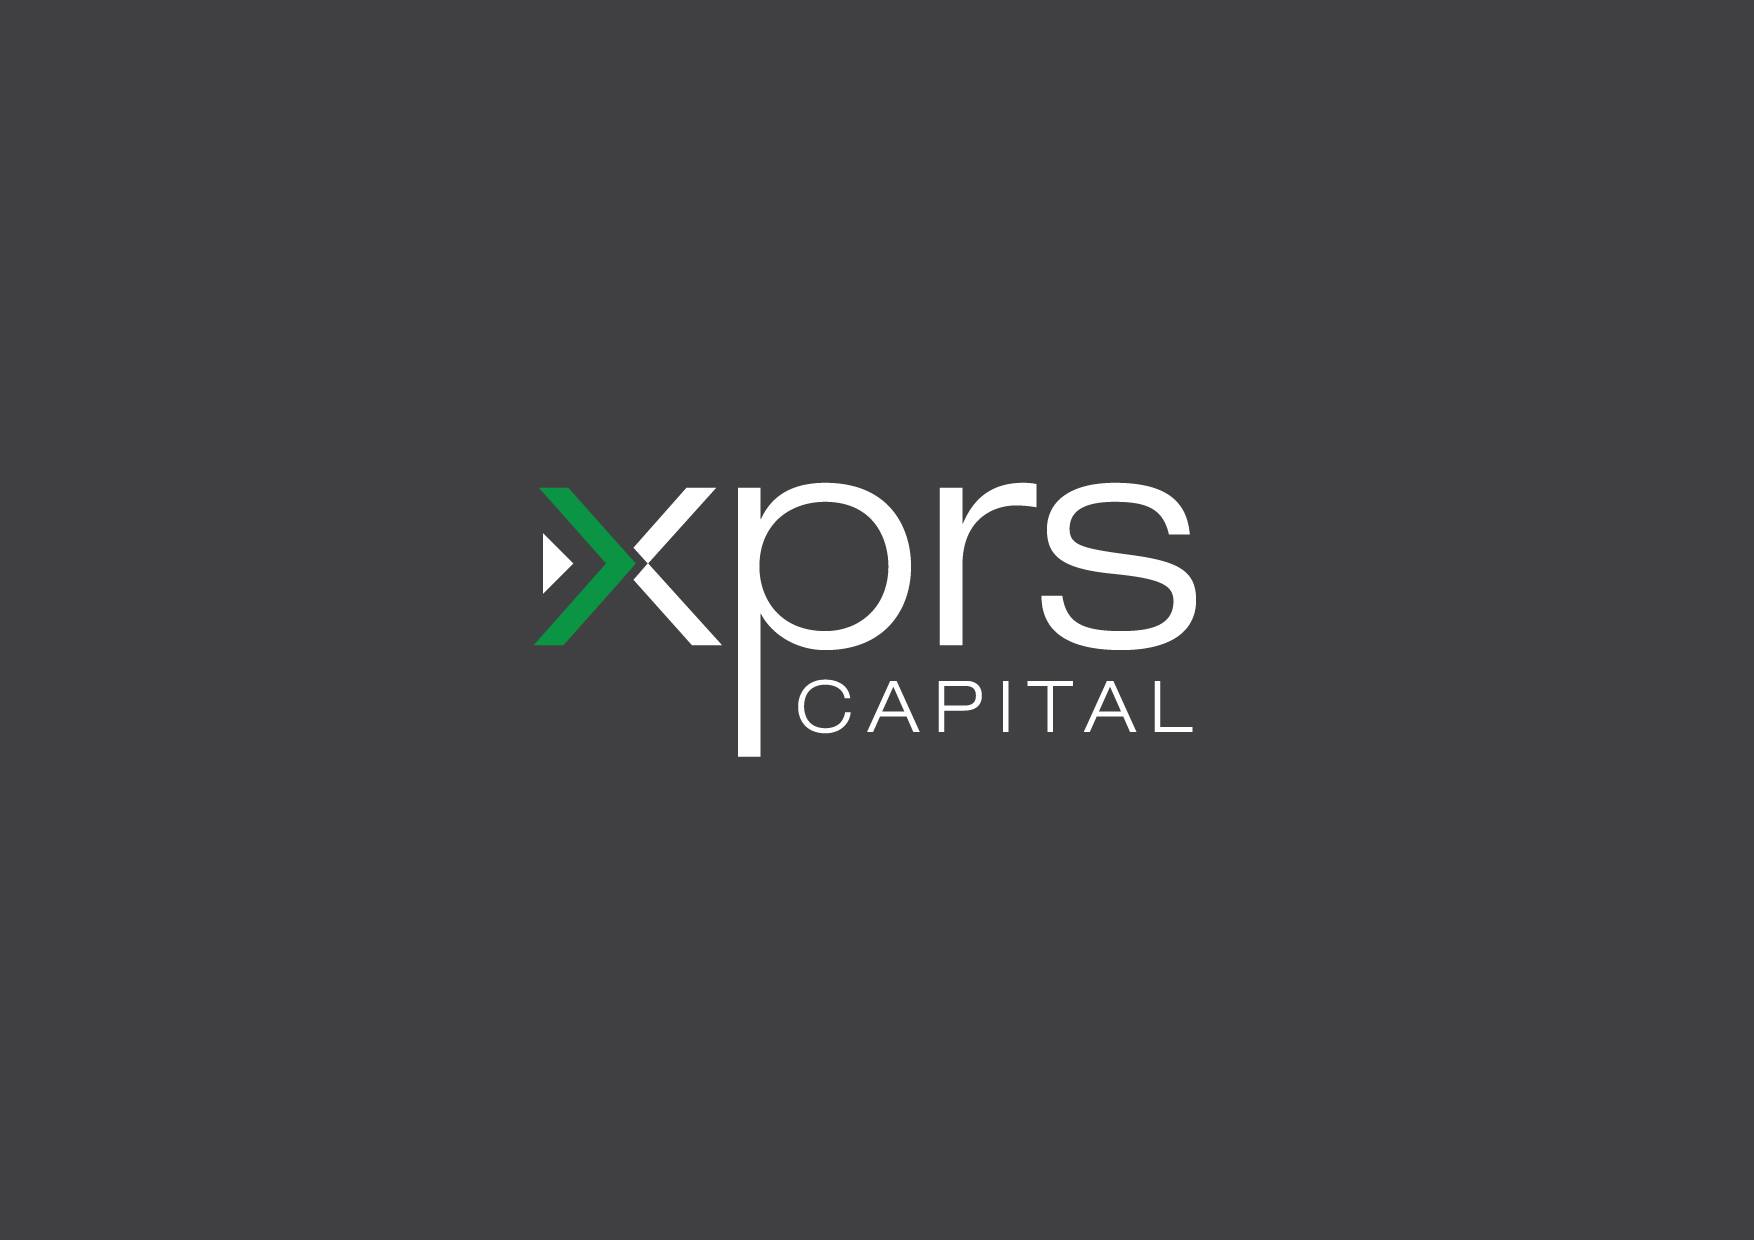 Company logo of XPRS Capital